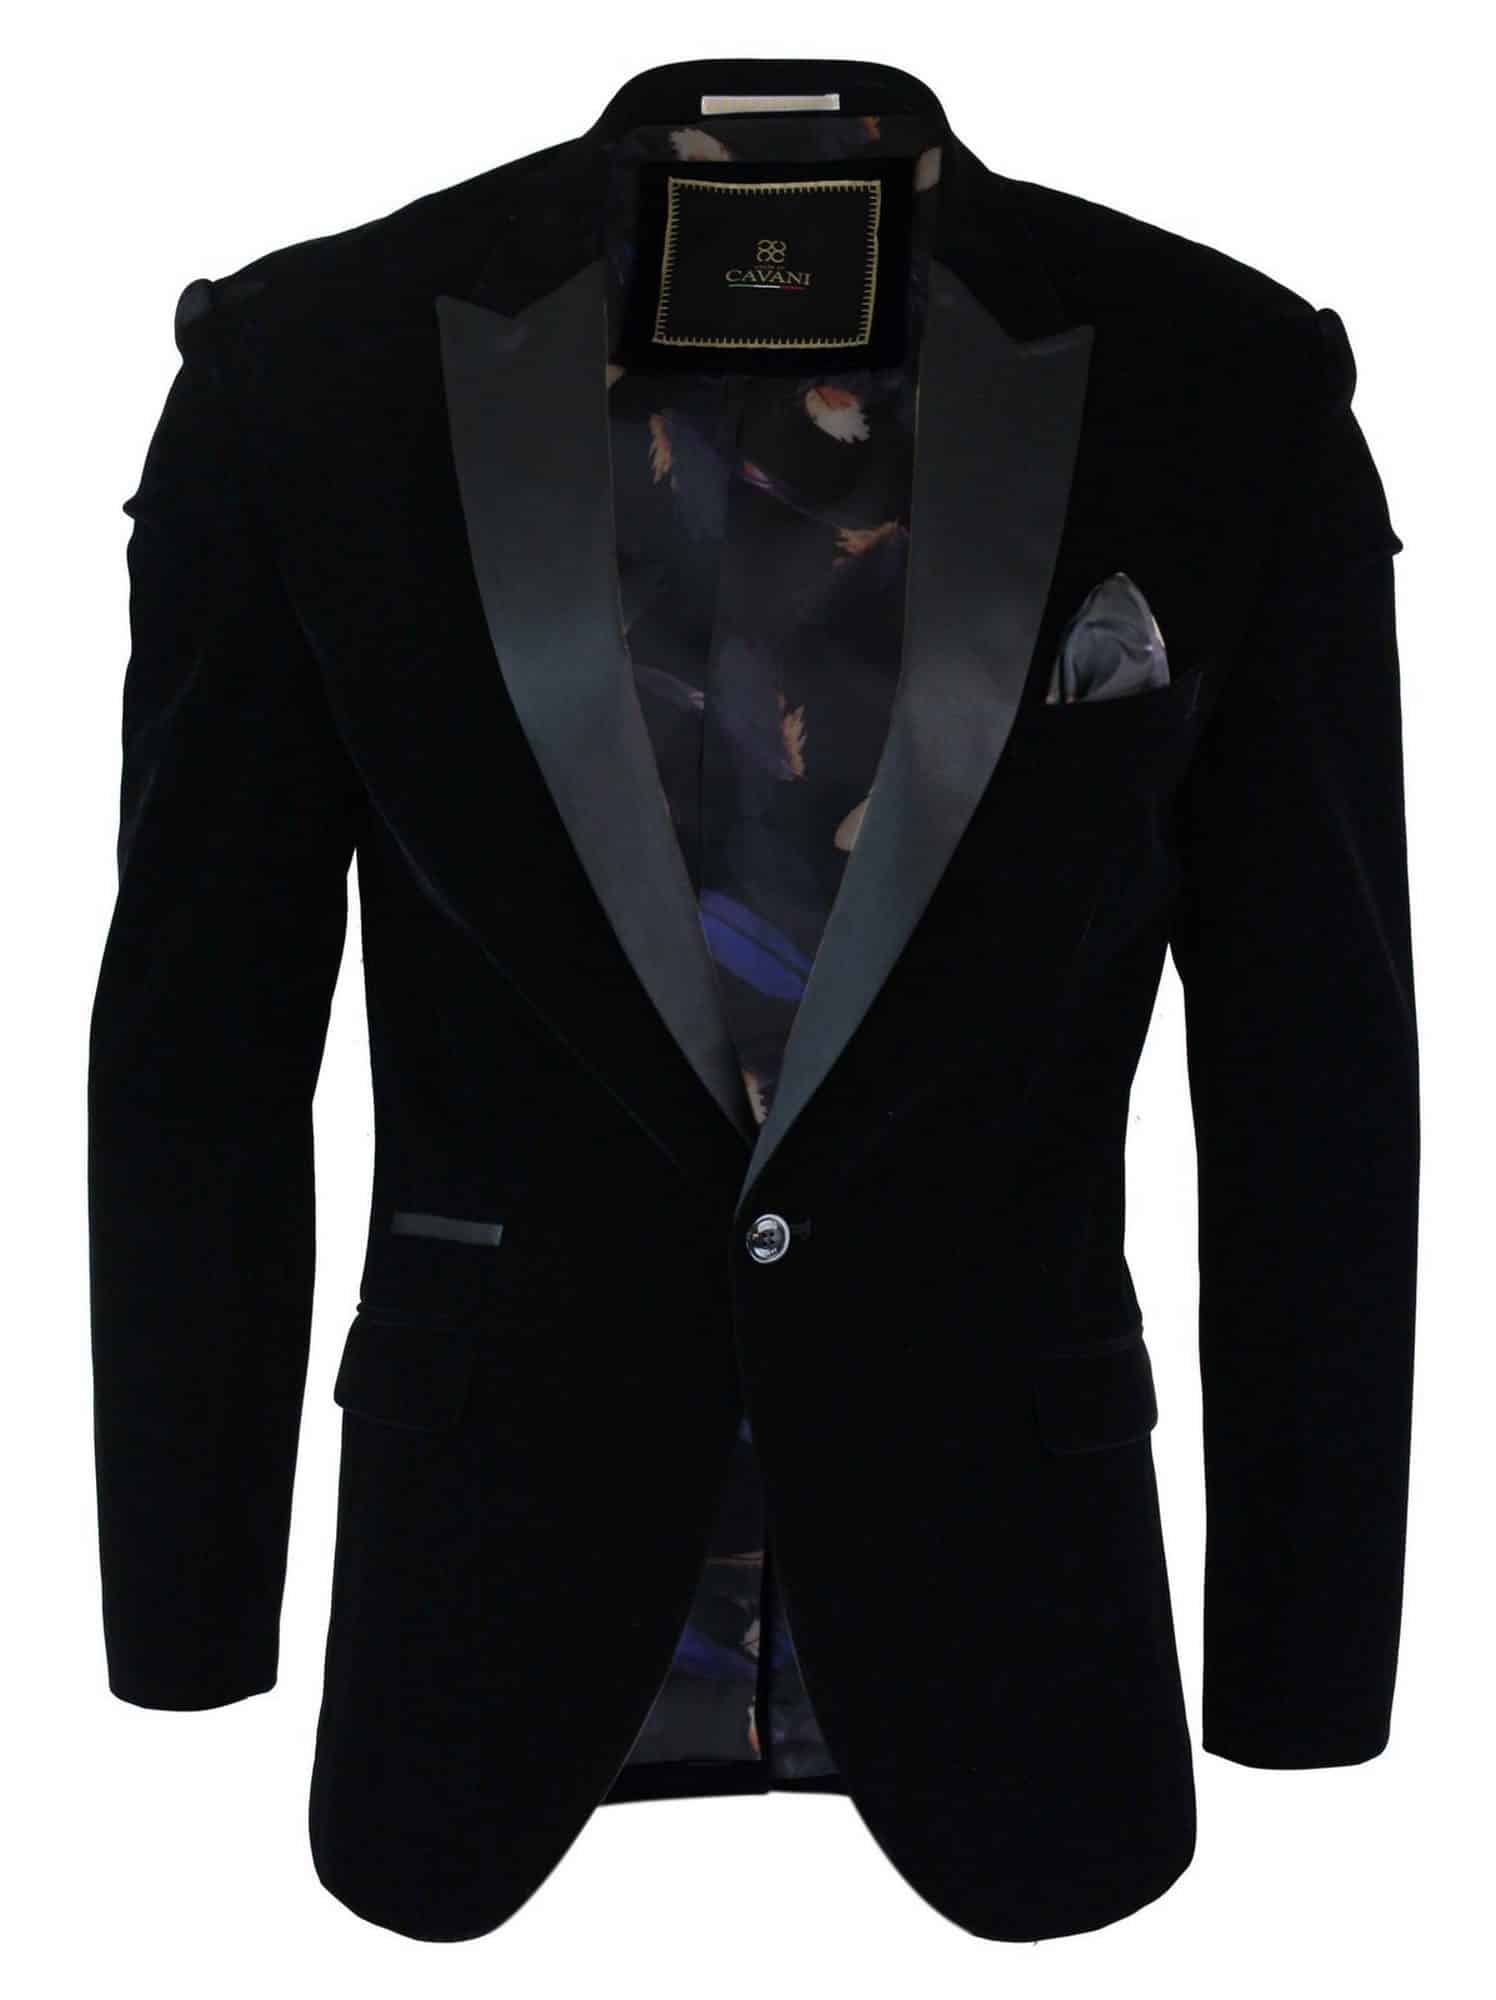 Men's Blazer Jackets : Formal, Casual, Tweed - Buy Online - Happy Gentleman